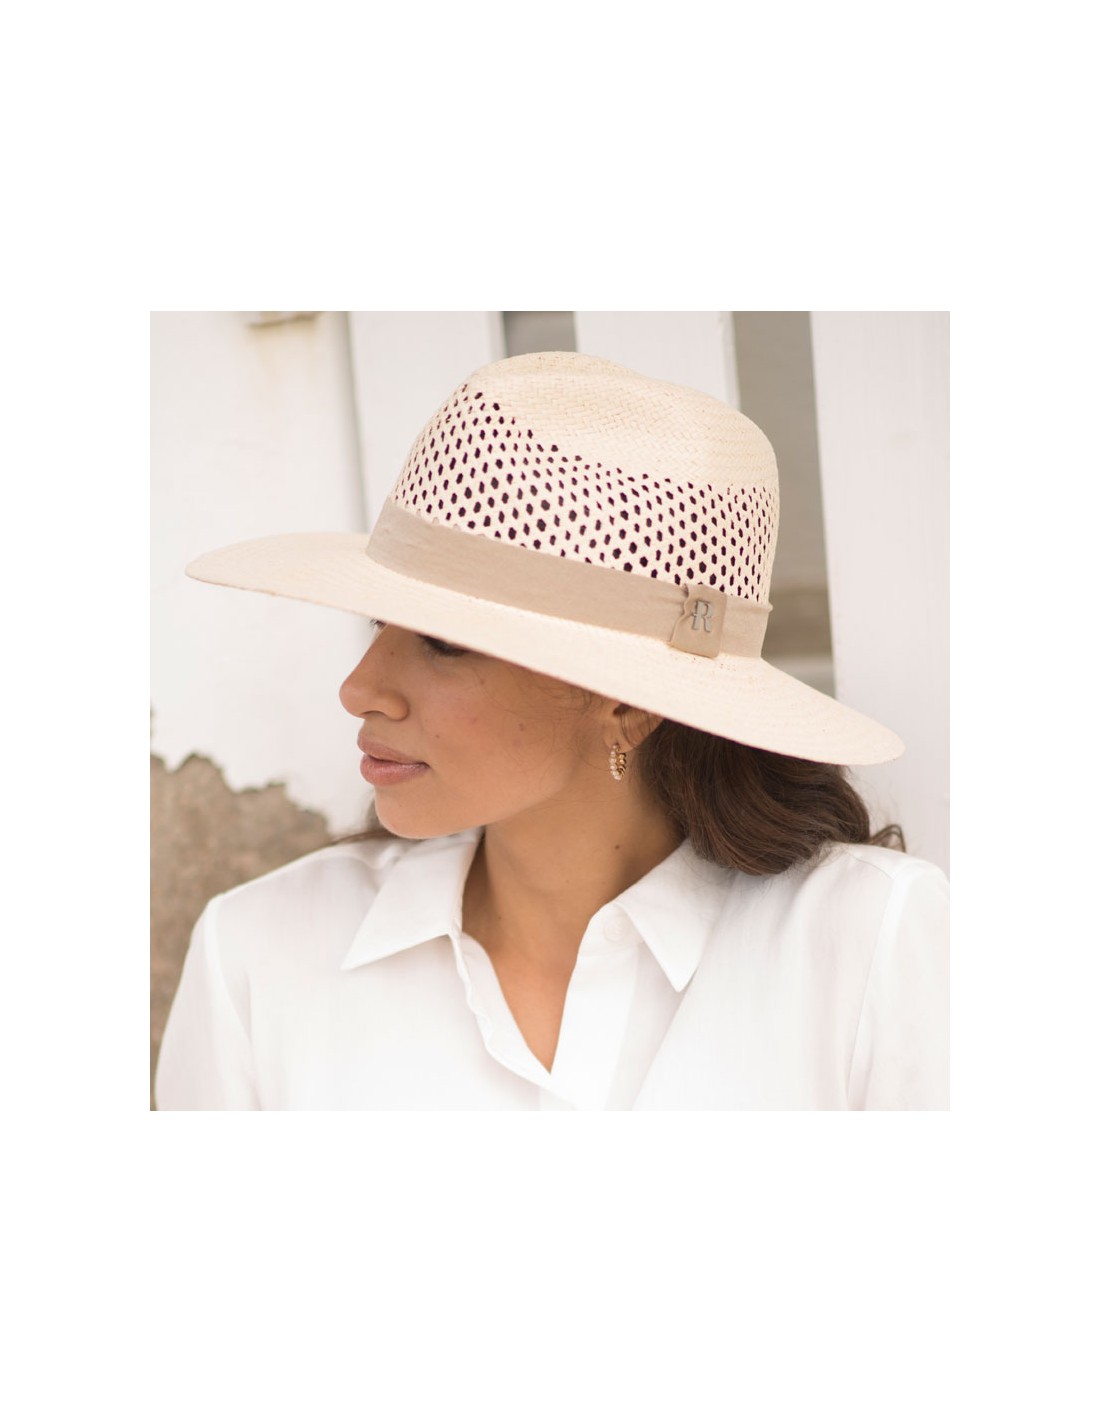 Tesoro Listo Falange Descubre el Exclusivo Sombrero Fedora Mujer en Papel Reciclado - Raceu Hats